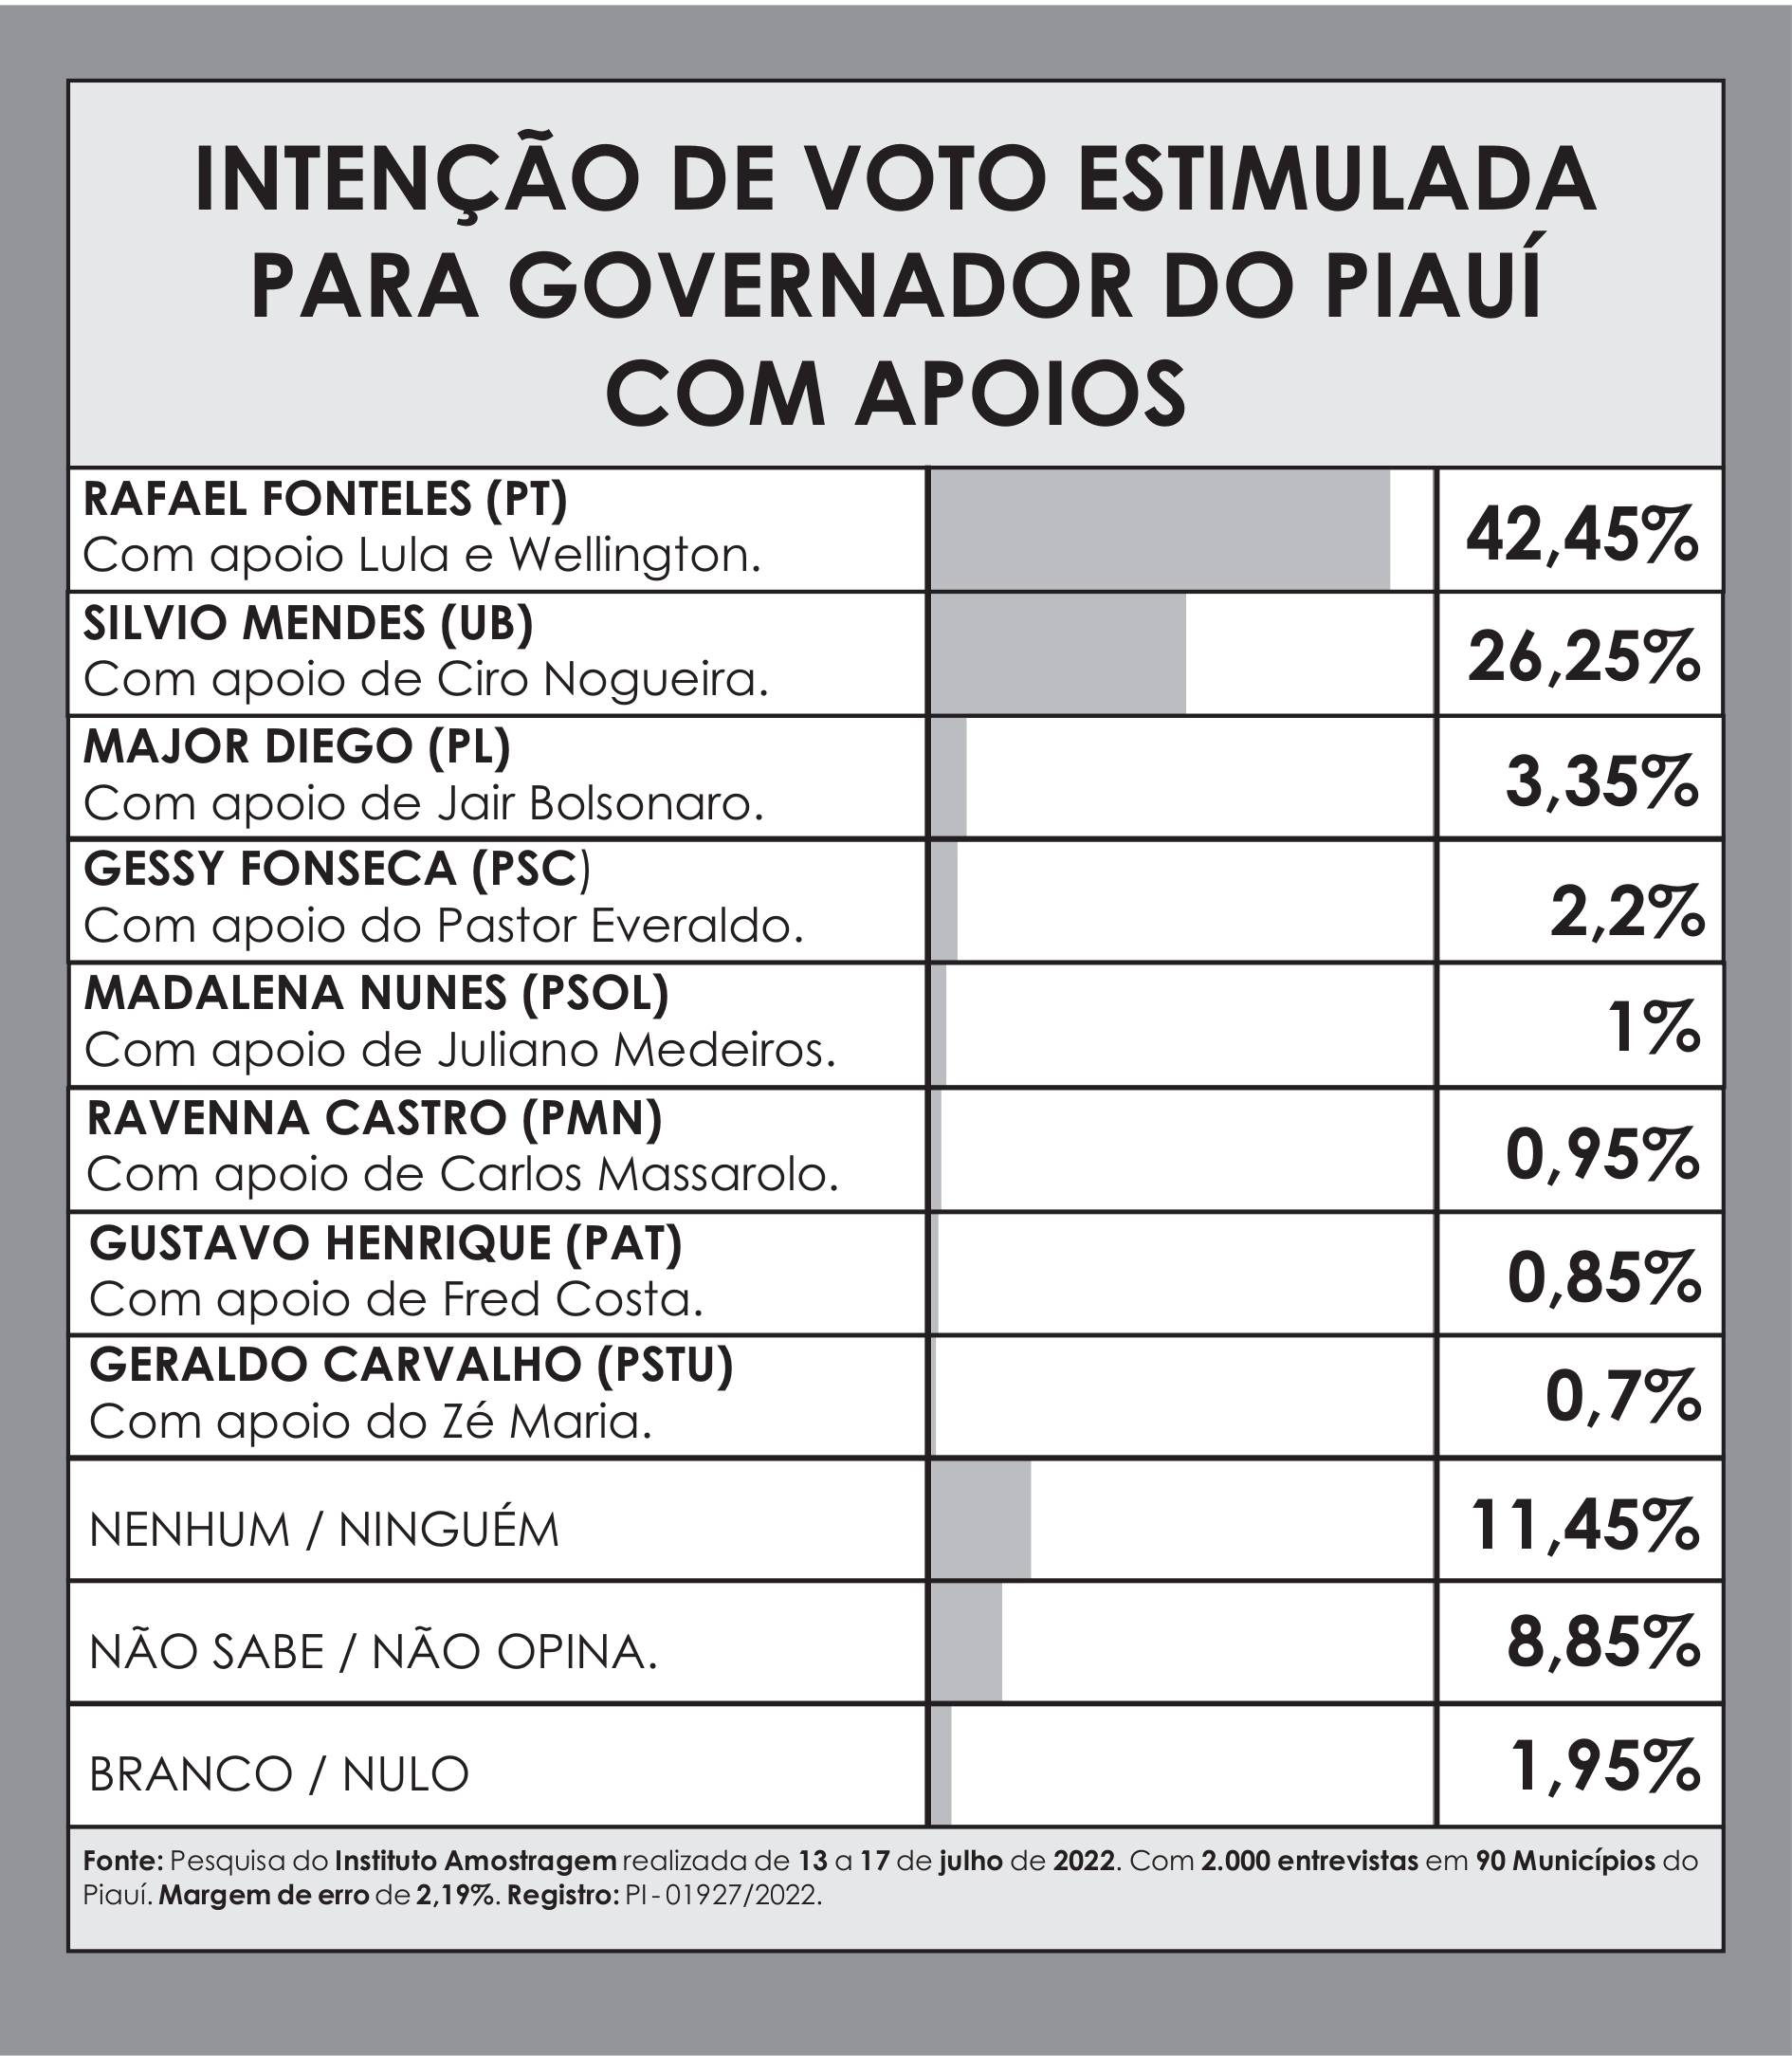 Intenção de voto estimulada para governador do Piauí com apoios (Foto: Divulgação/ Amostragem)